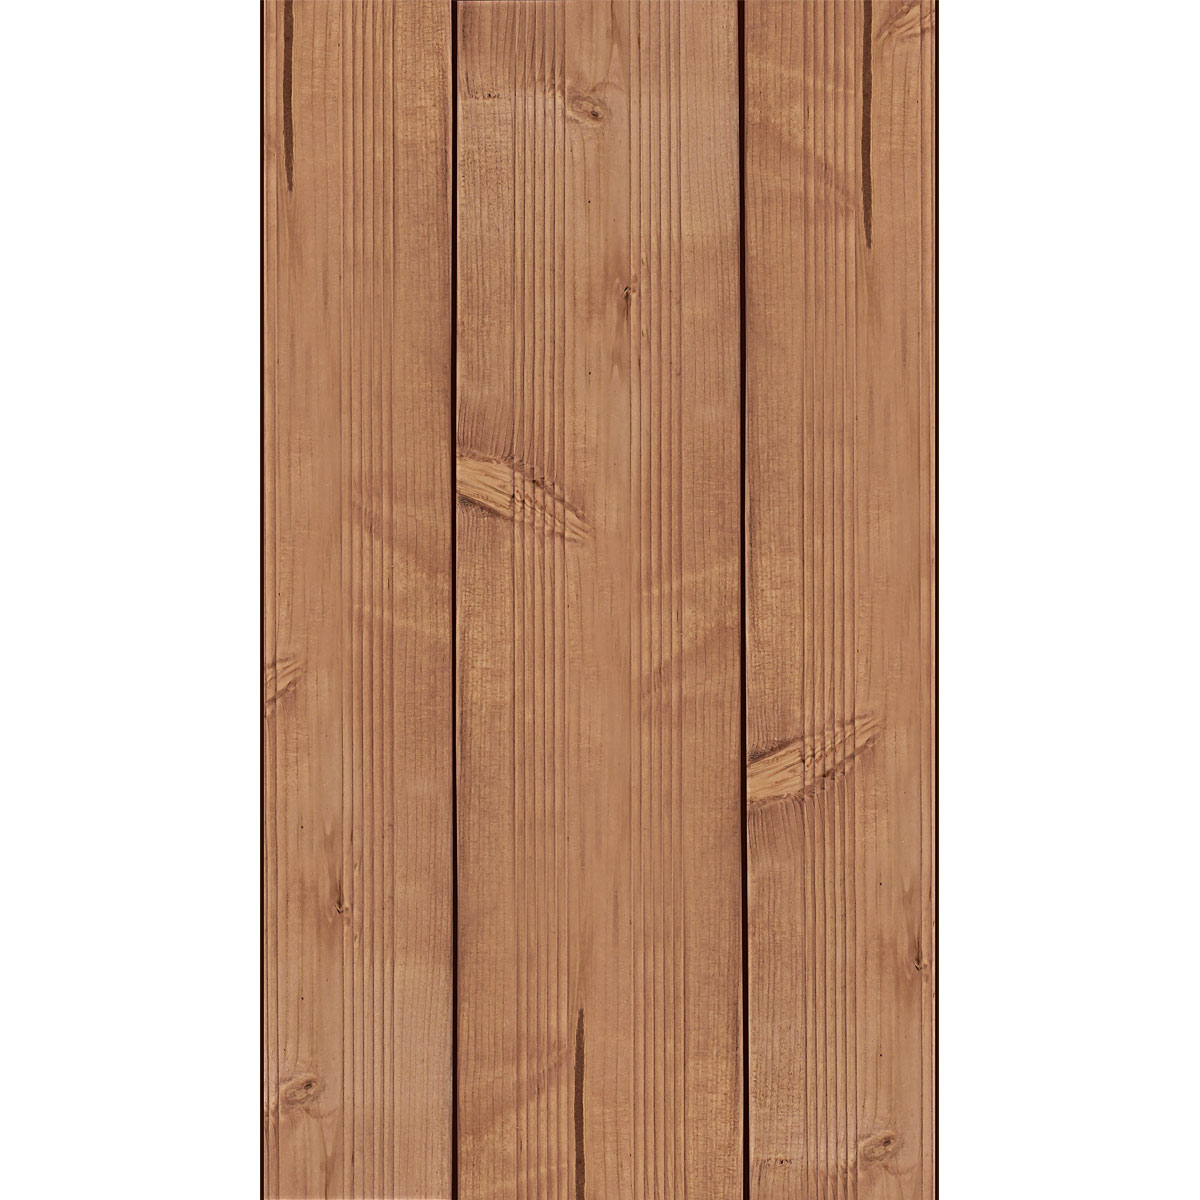 Terrassendiele Nadelholz teilgeriffelt, 250x12,5x2,5cm